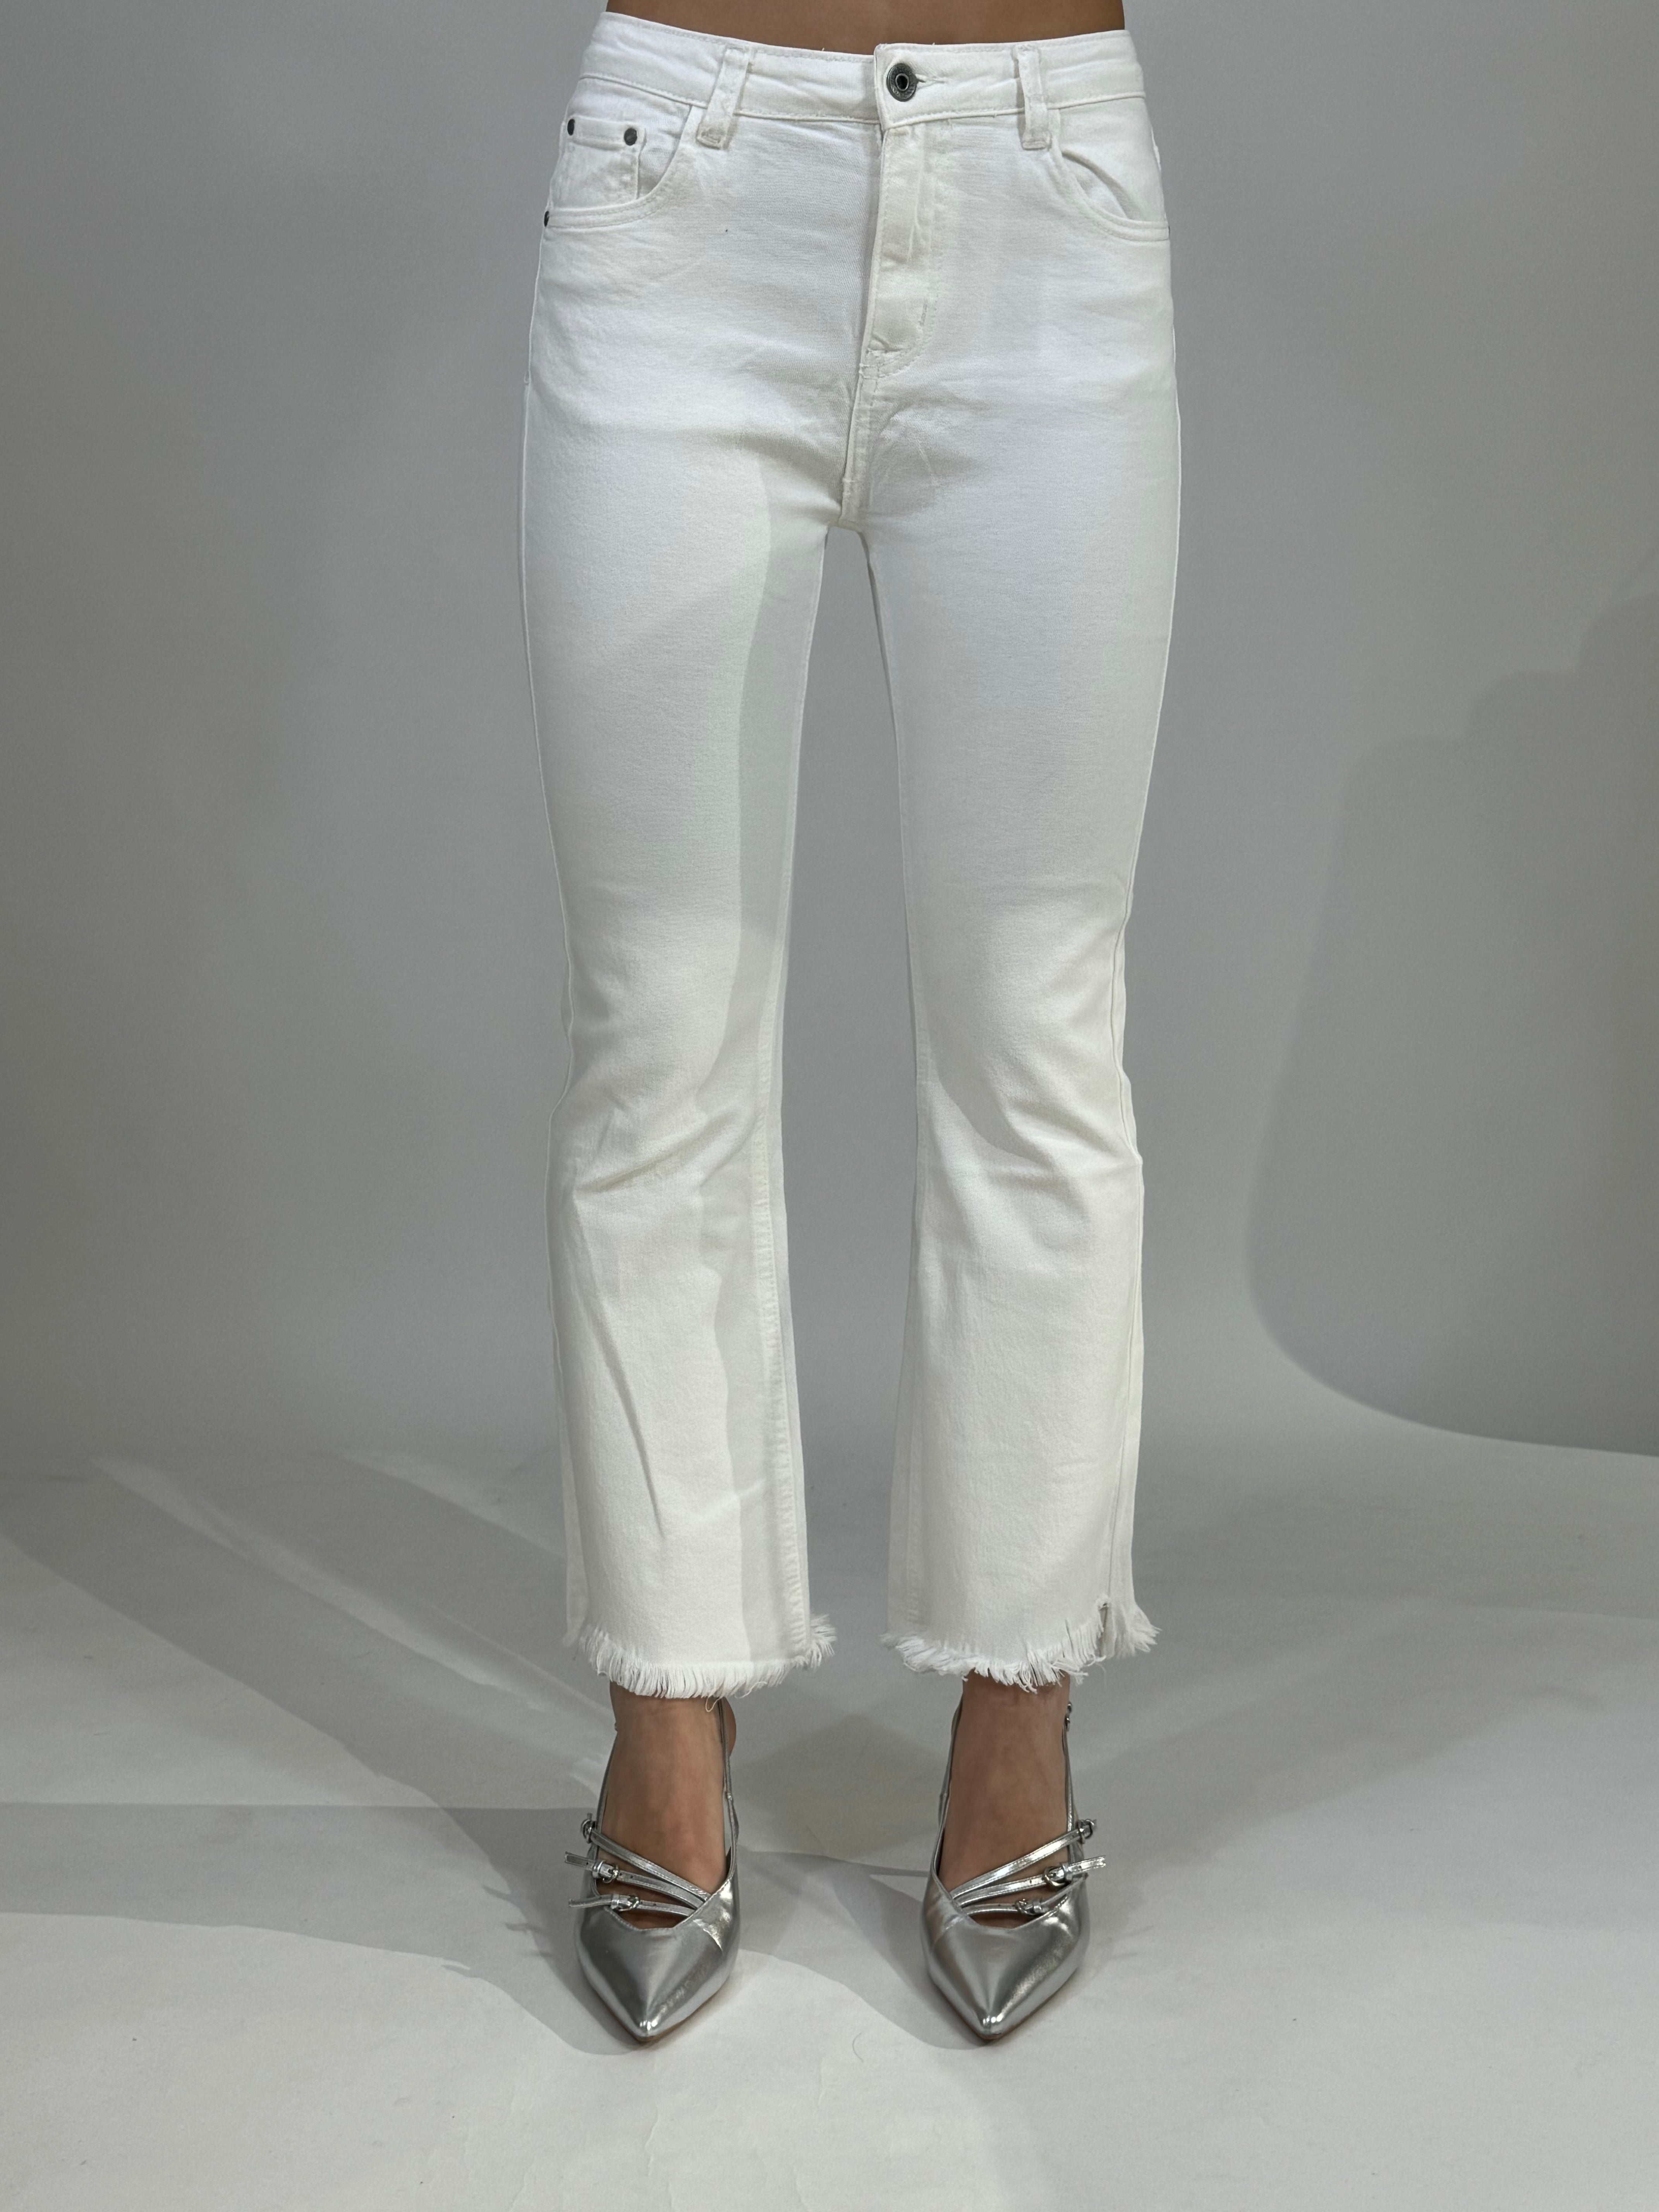 Jeans Susy Mix bianco a trombetta sfrangiato in fondo con bordo asimmetrico